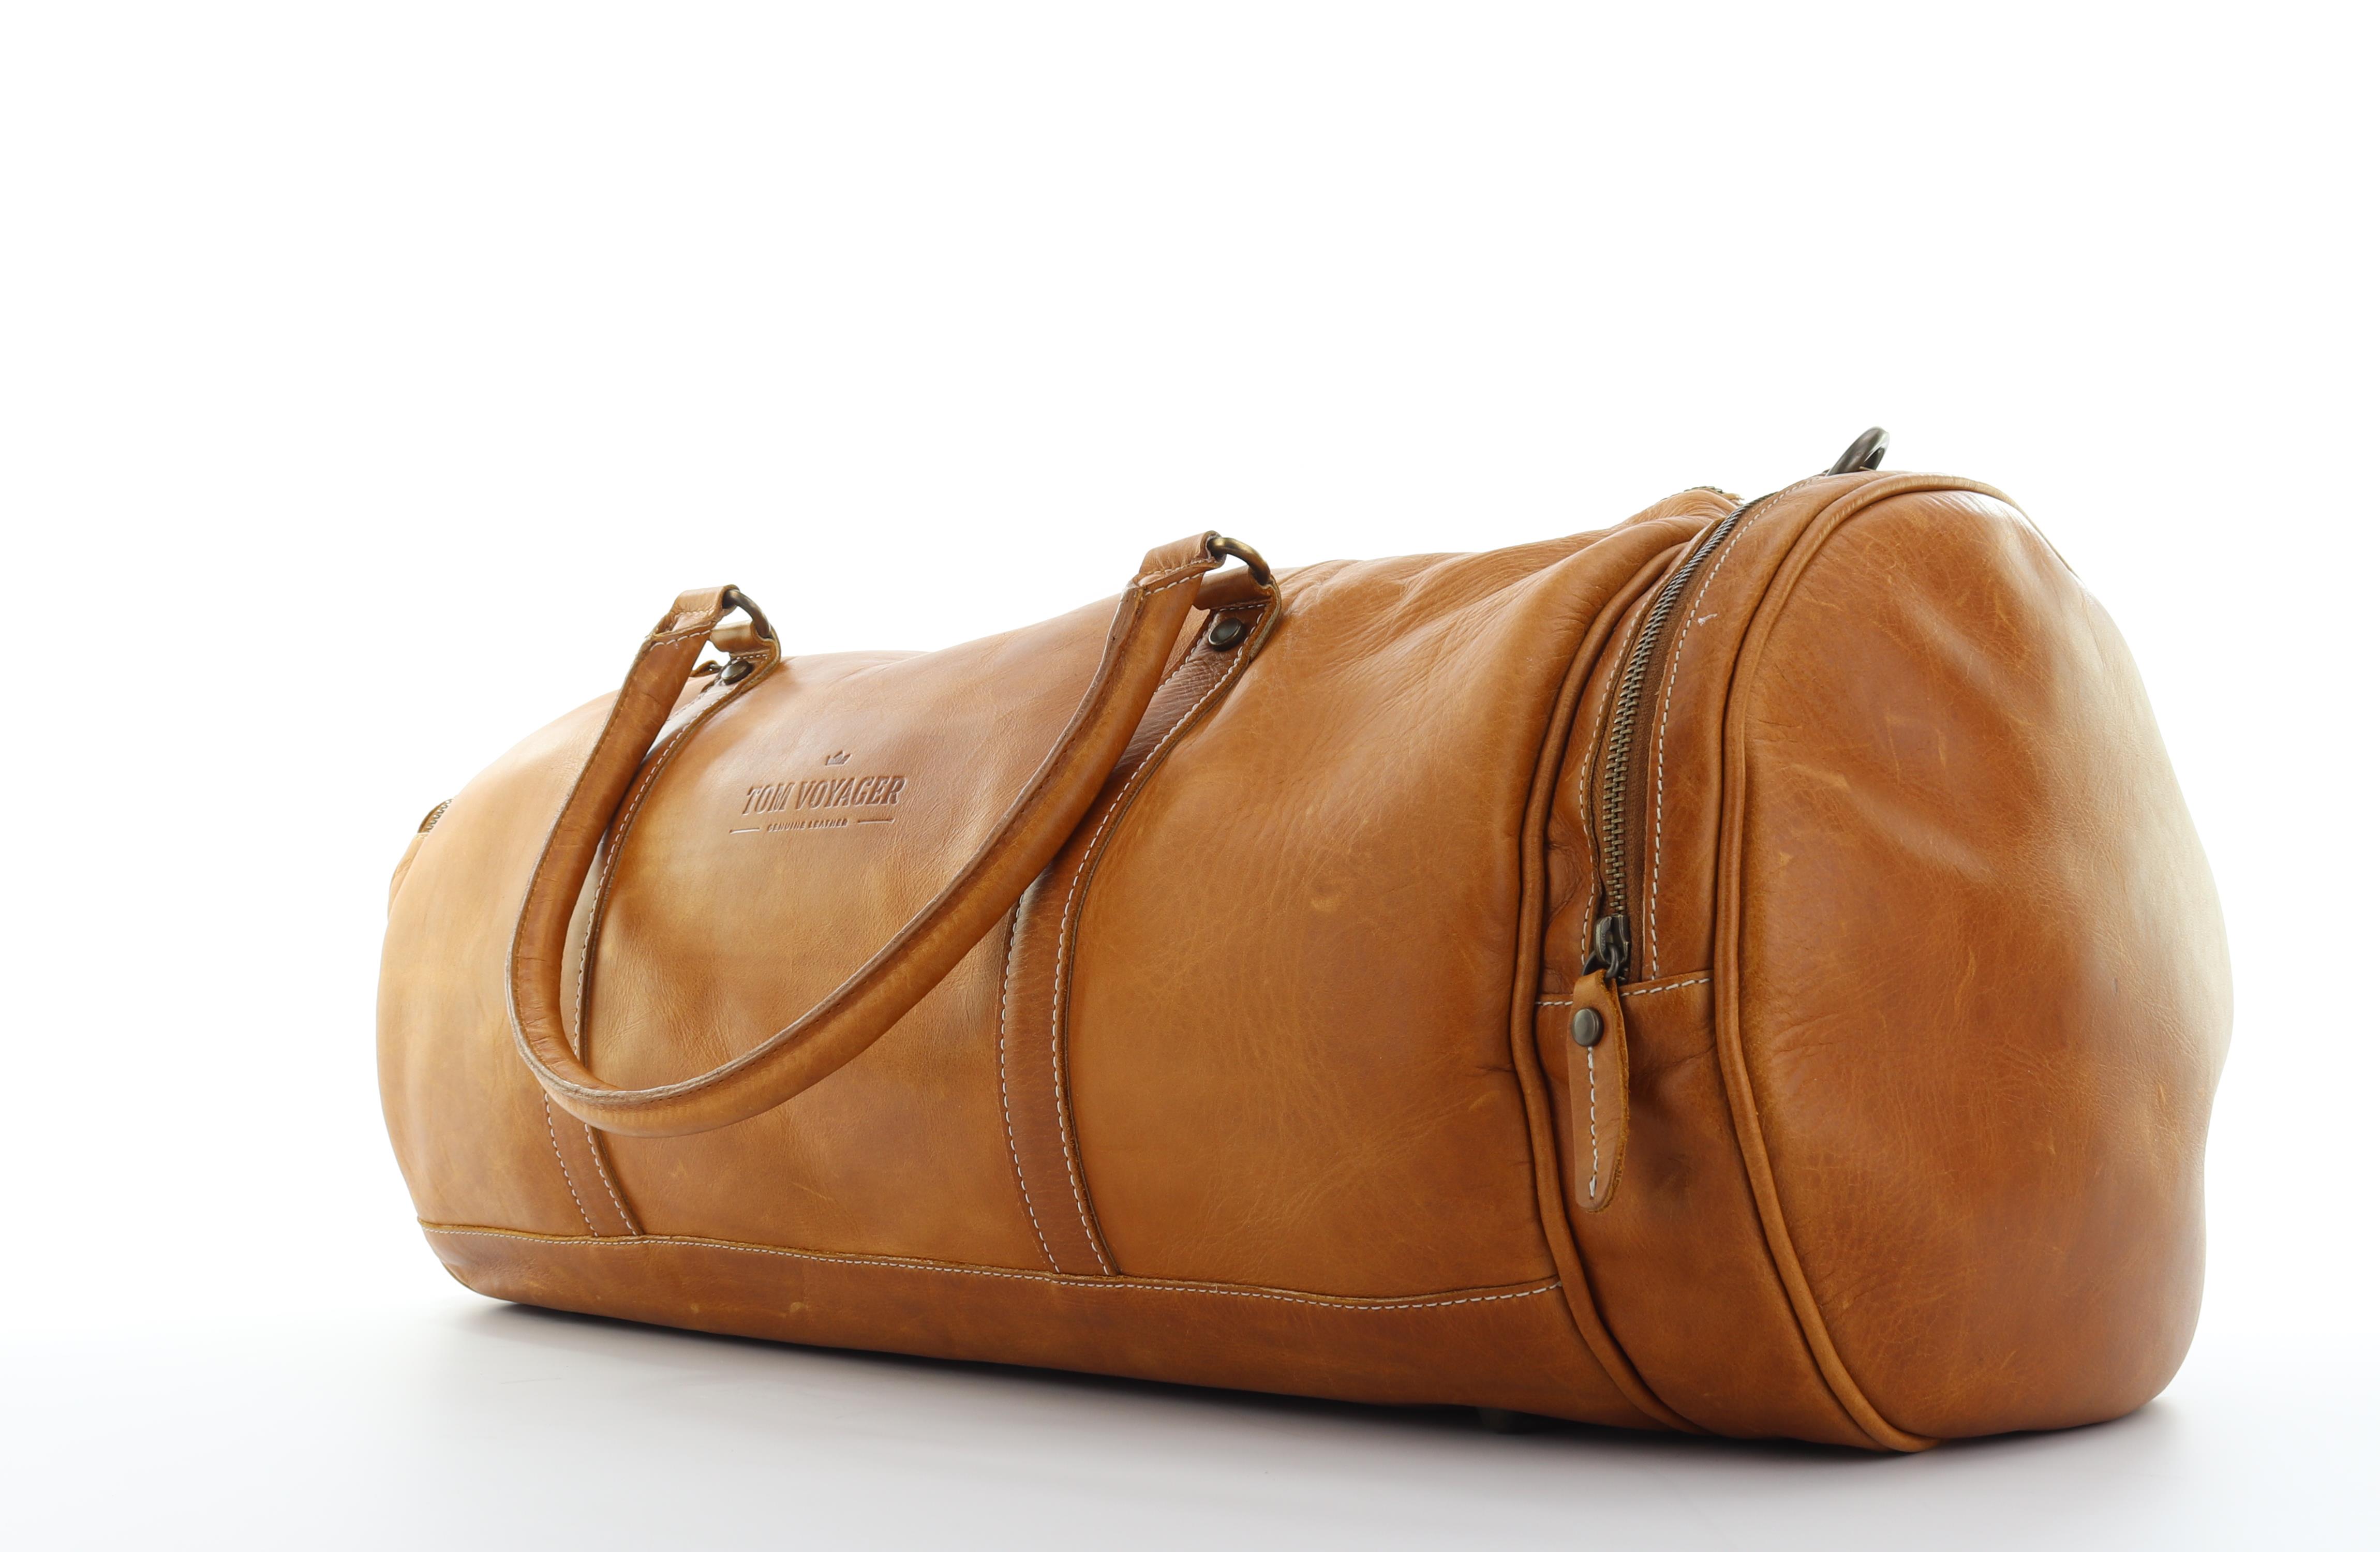 Duncan leather travel bag - light brown